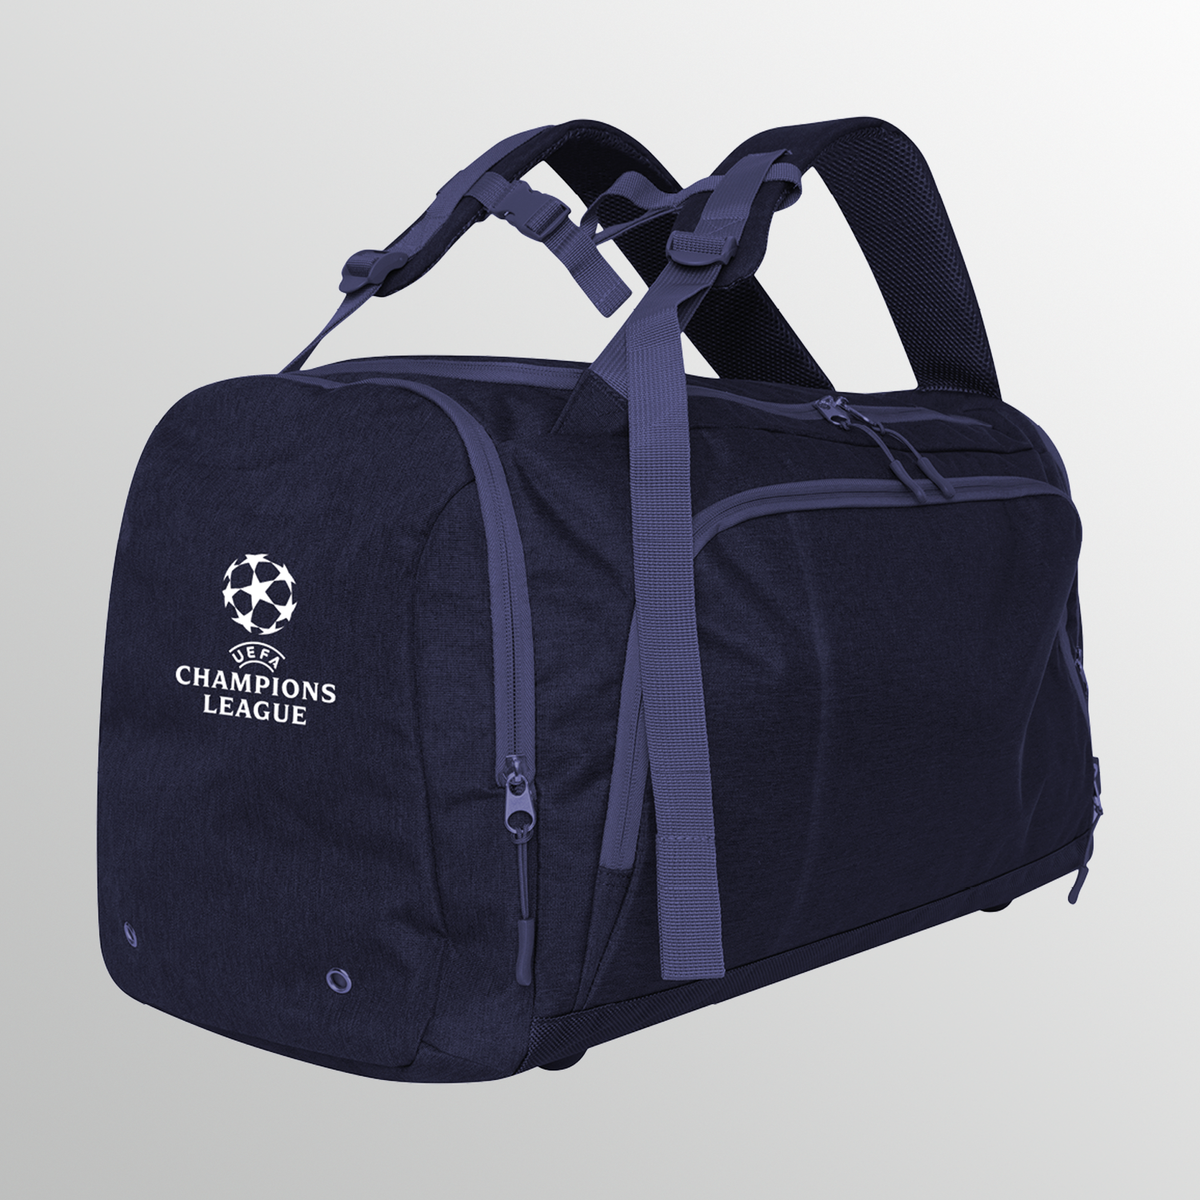 UEFA Champions League Eco Tech 2 en 1 bolsa - mochila y holdall